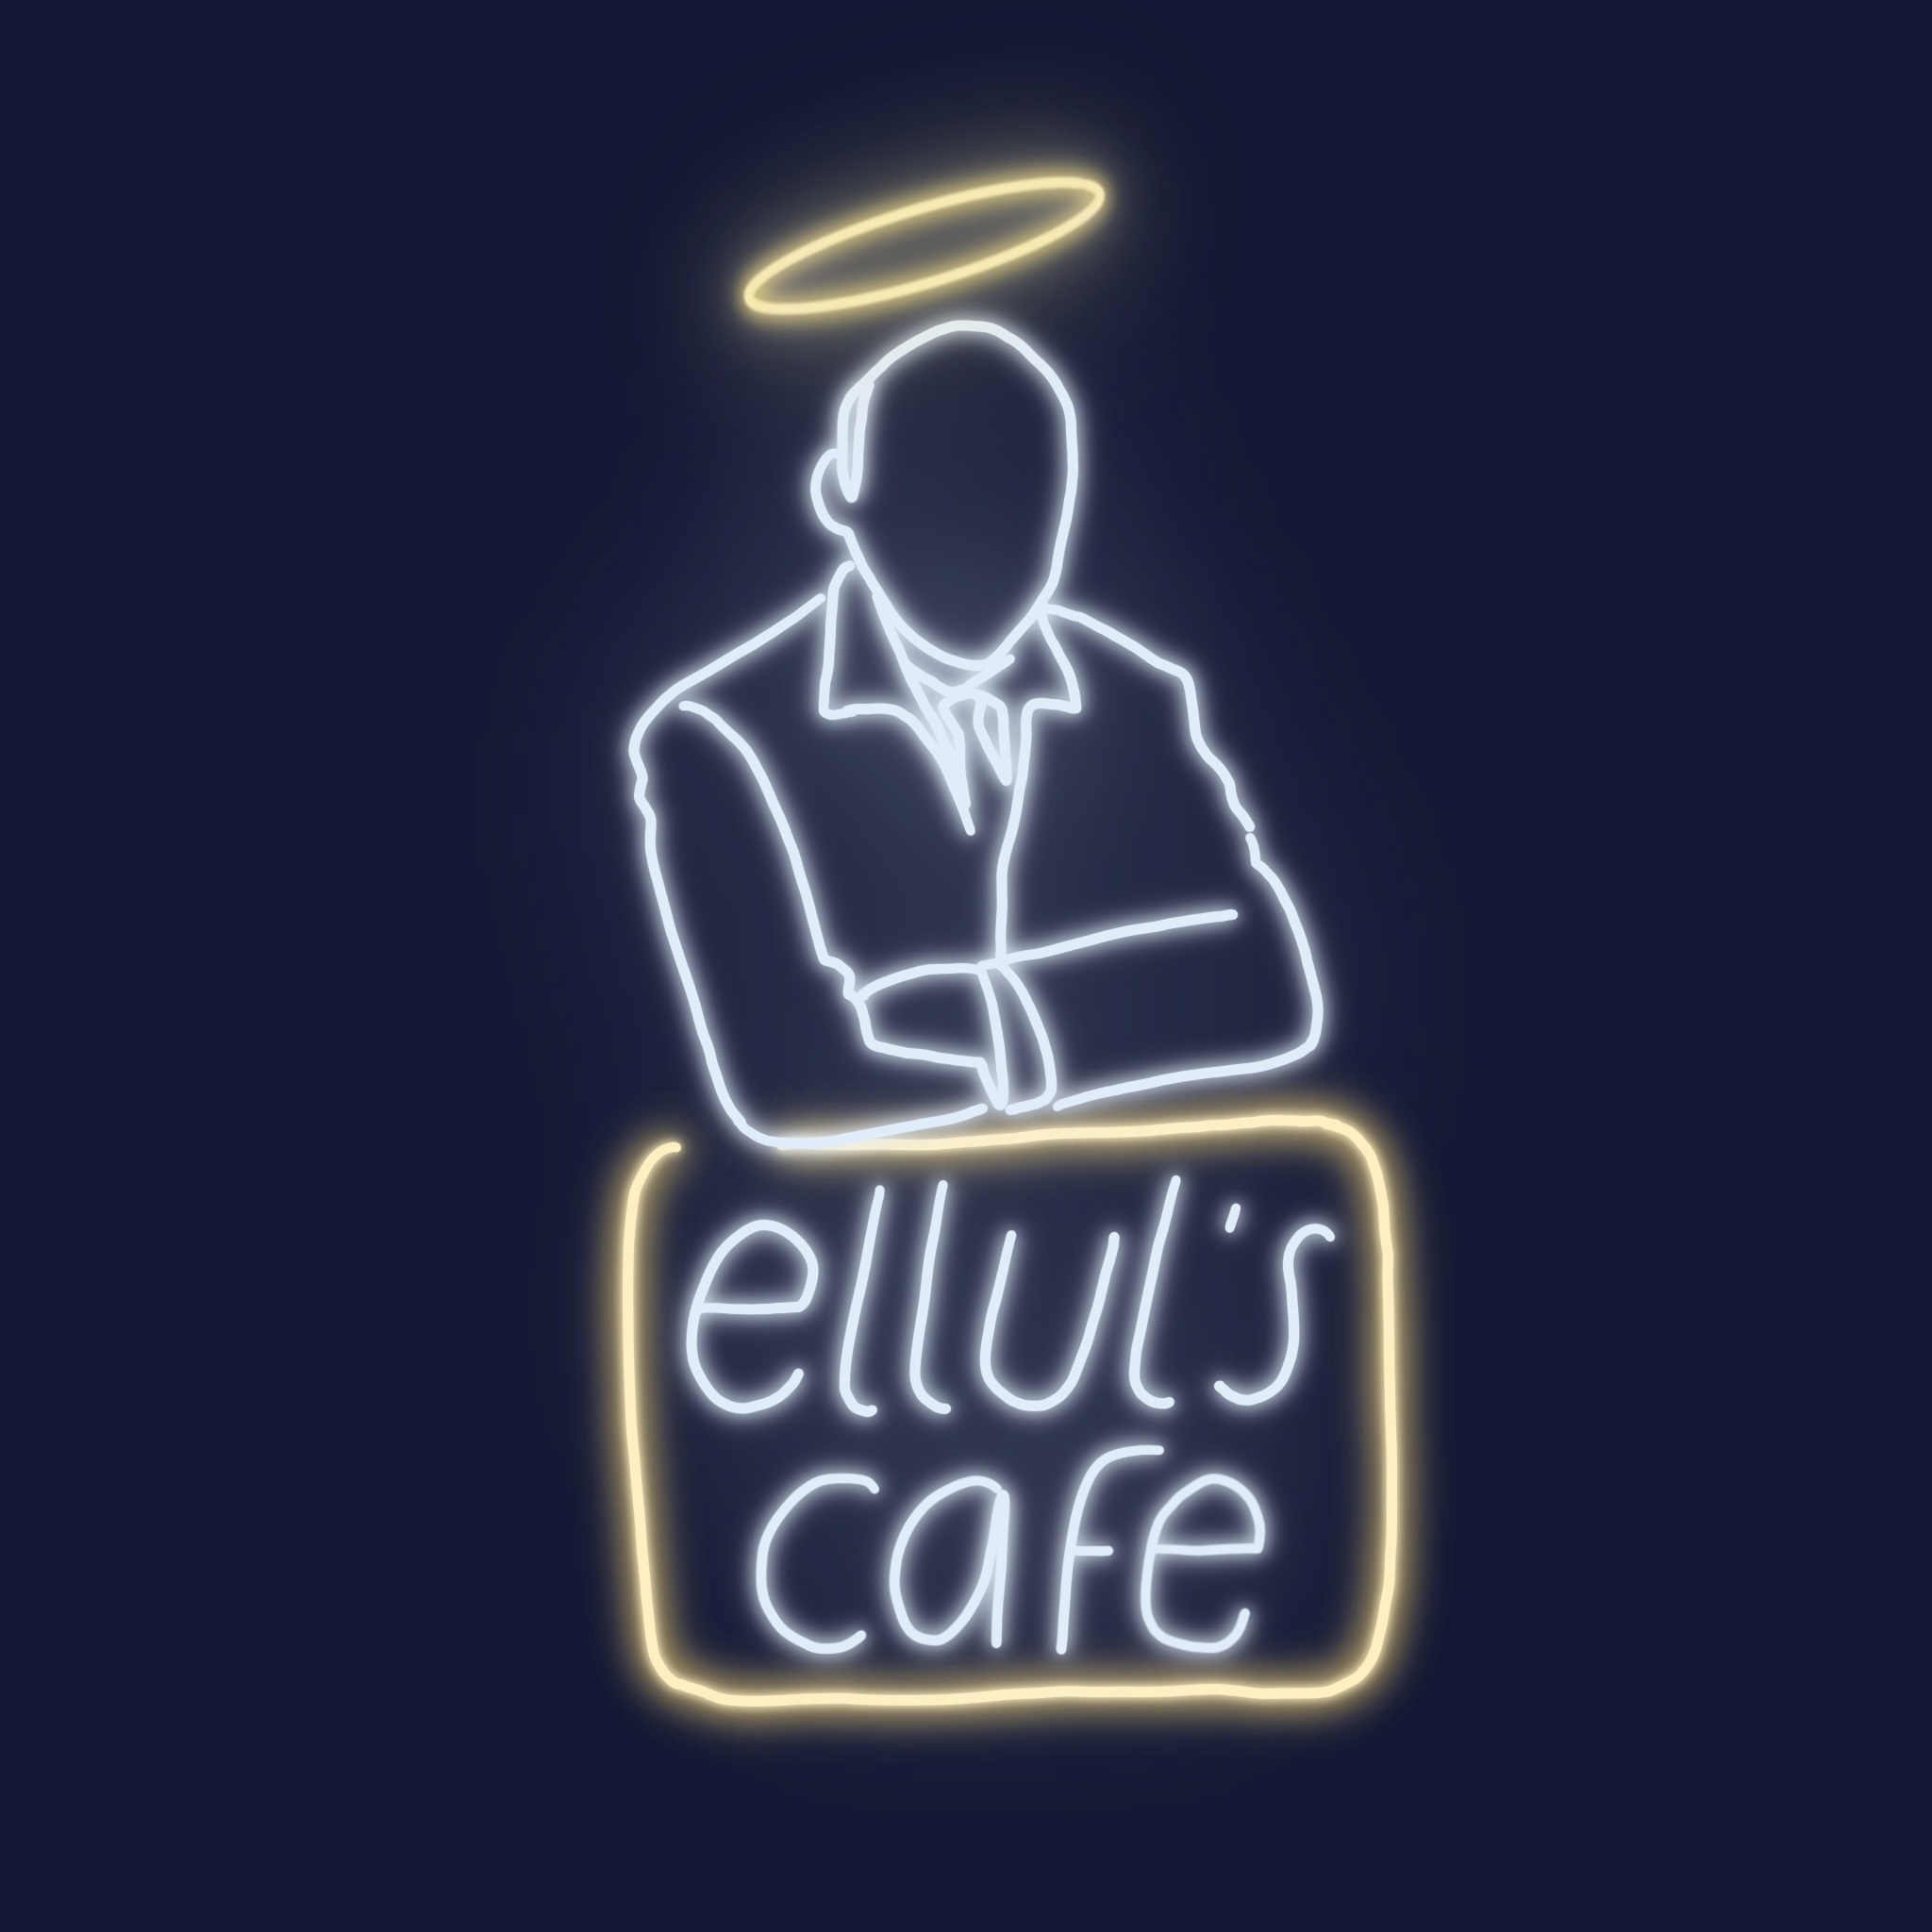 Ellul's Cafe LIVE